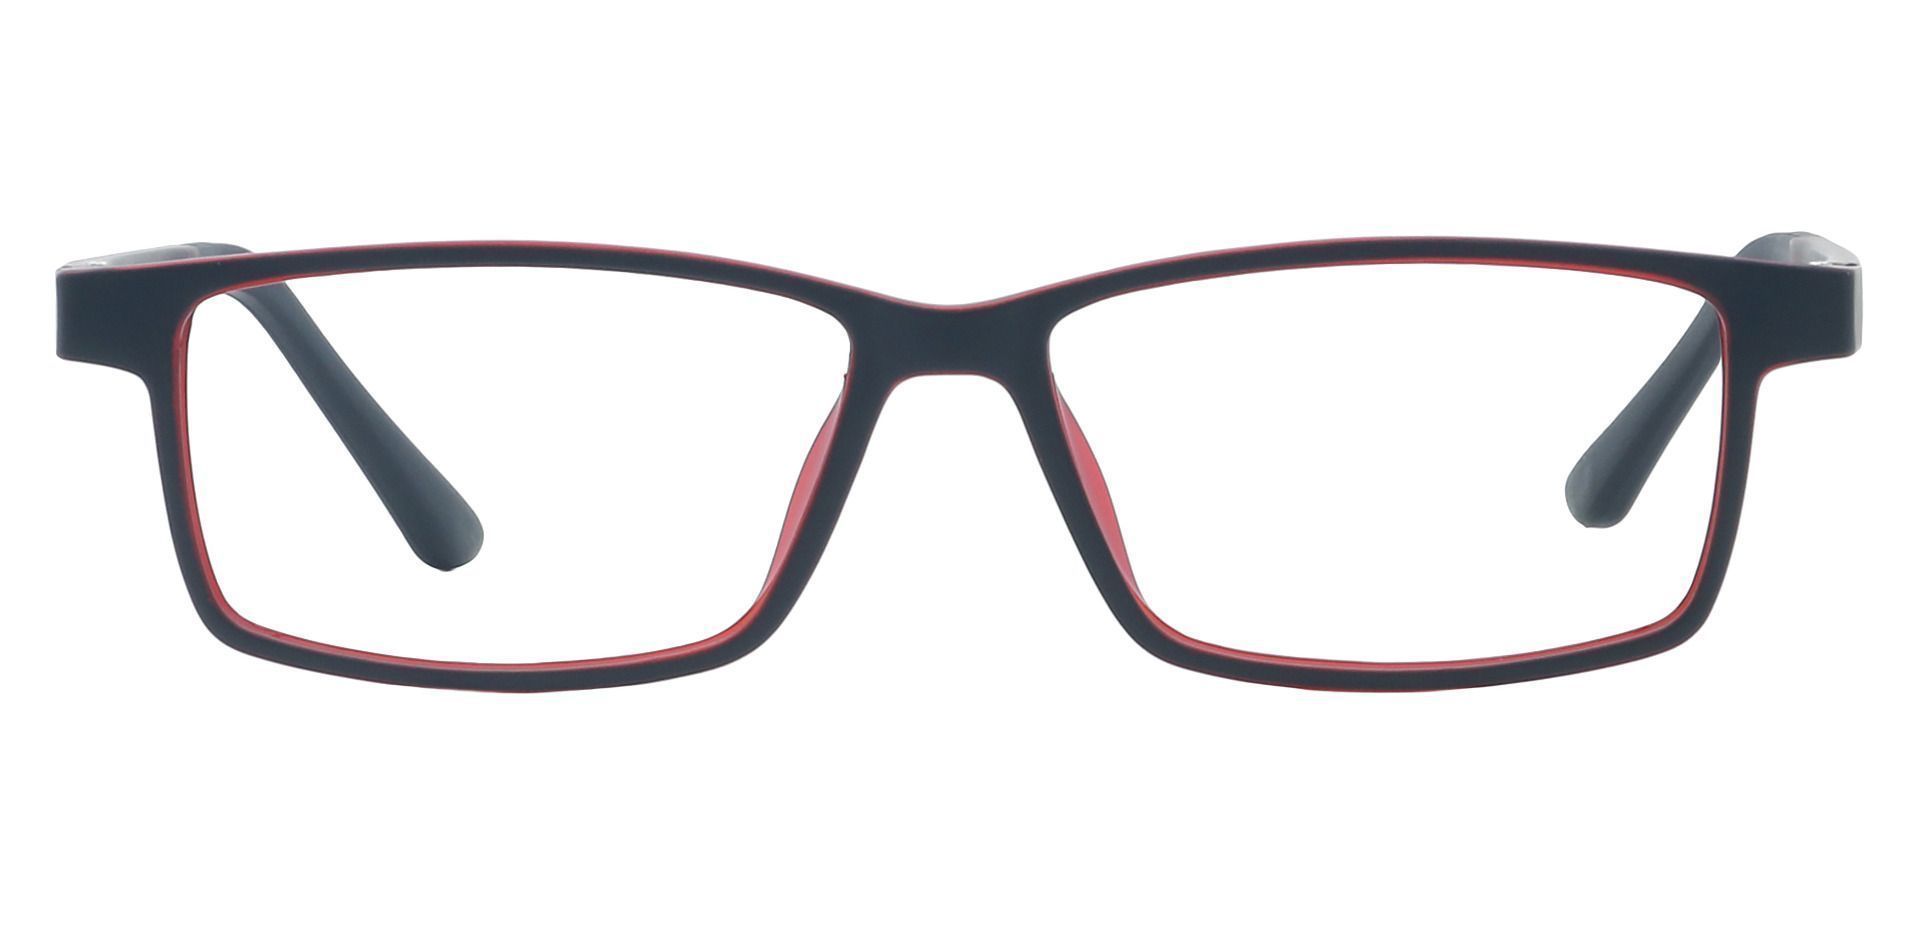 Hanson Rectangle Prescription Glasses - Red